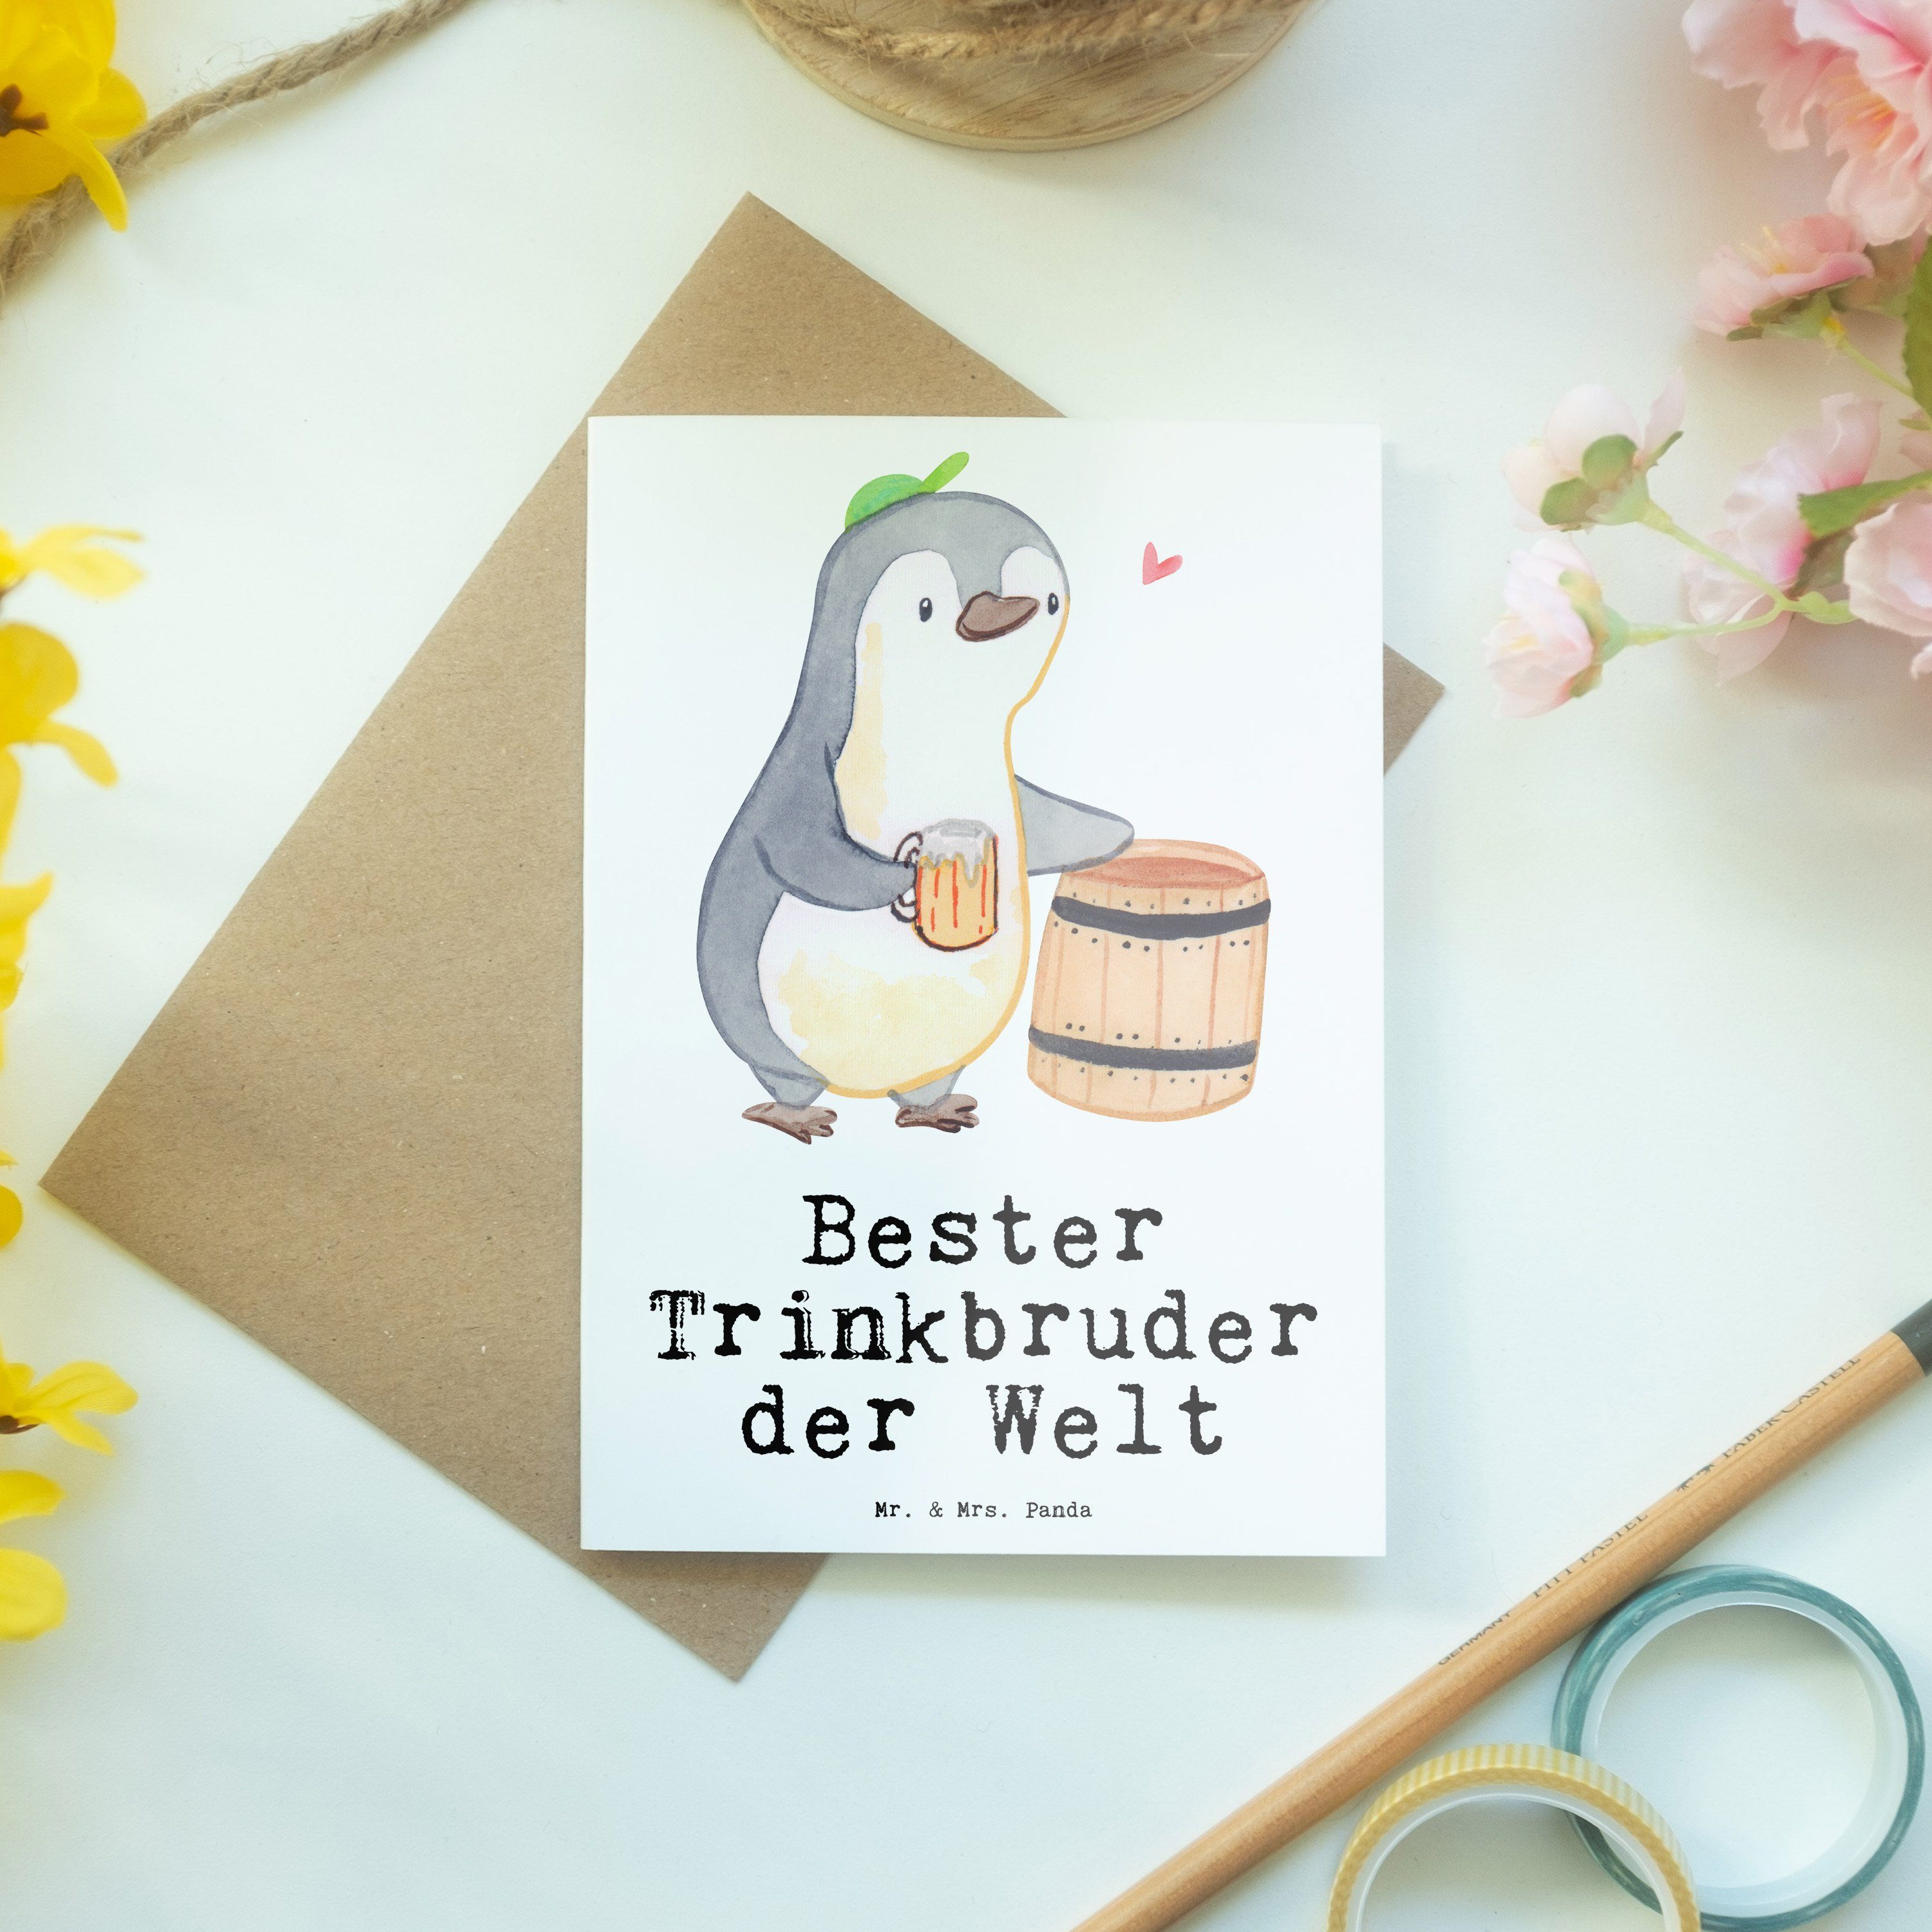 Welt Weiß & Grußkarte Mrs. - Pinguin der Panda Trinkbruder Glückwunschkar Mr. Bester - Geschenk,